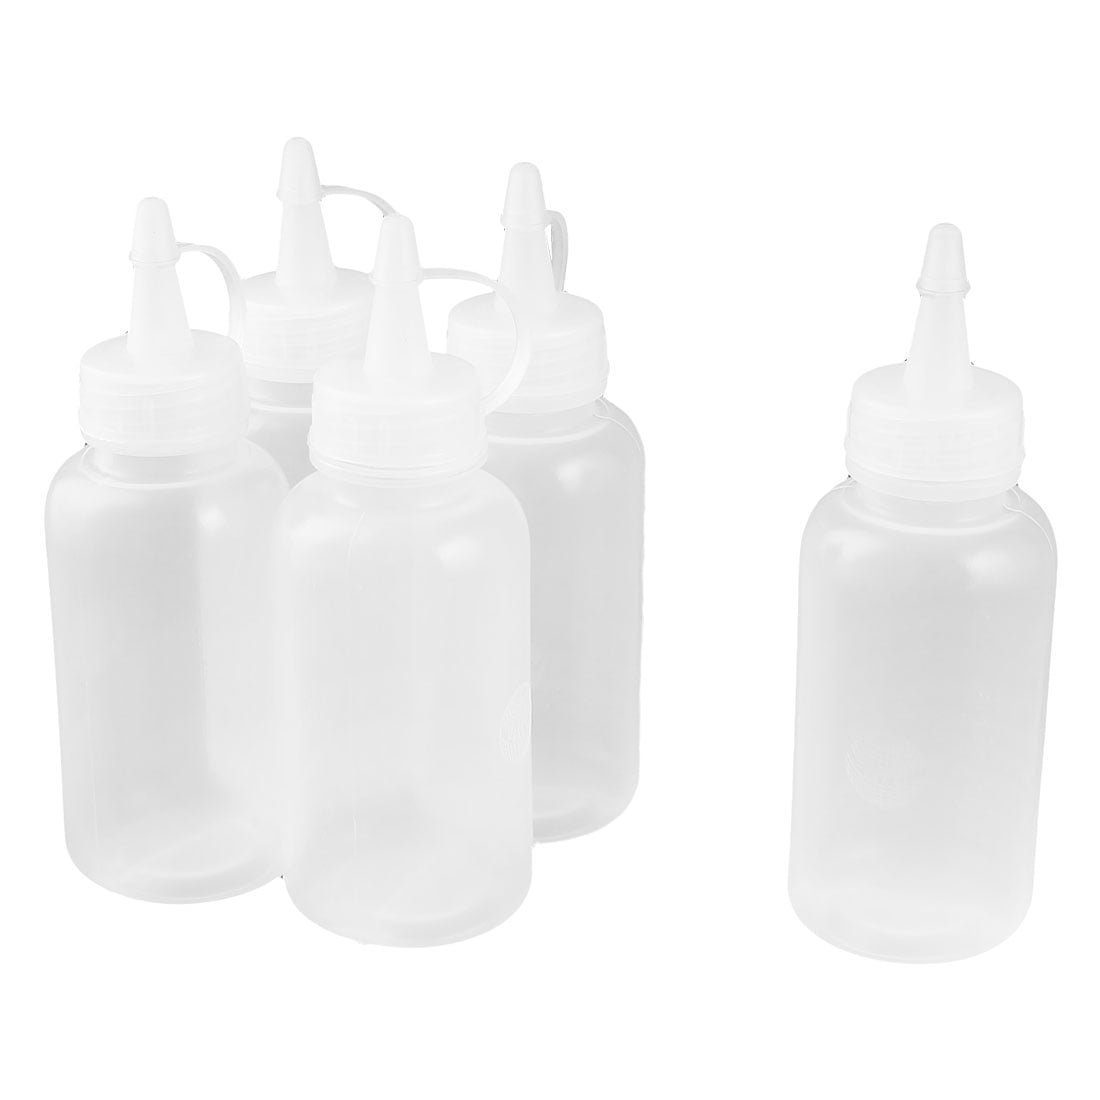 5PCS Oil Bottle Kitchen Oil Spray Bottle Condiment Squeeze Bottles